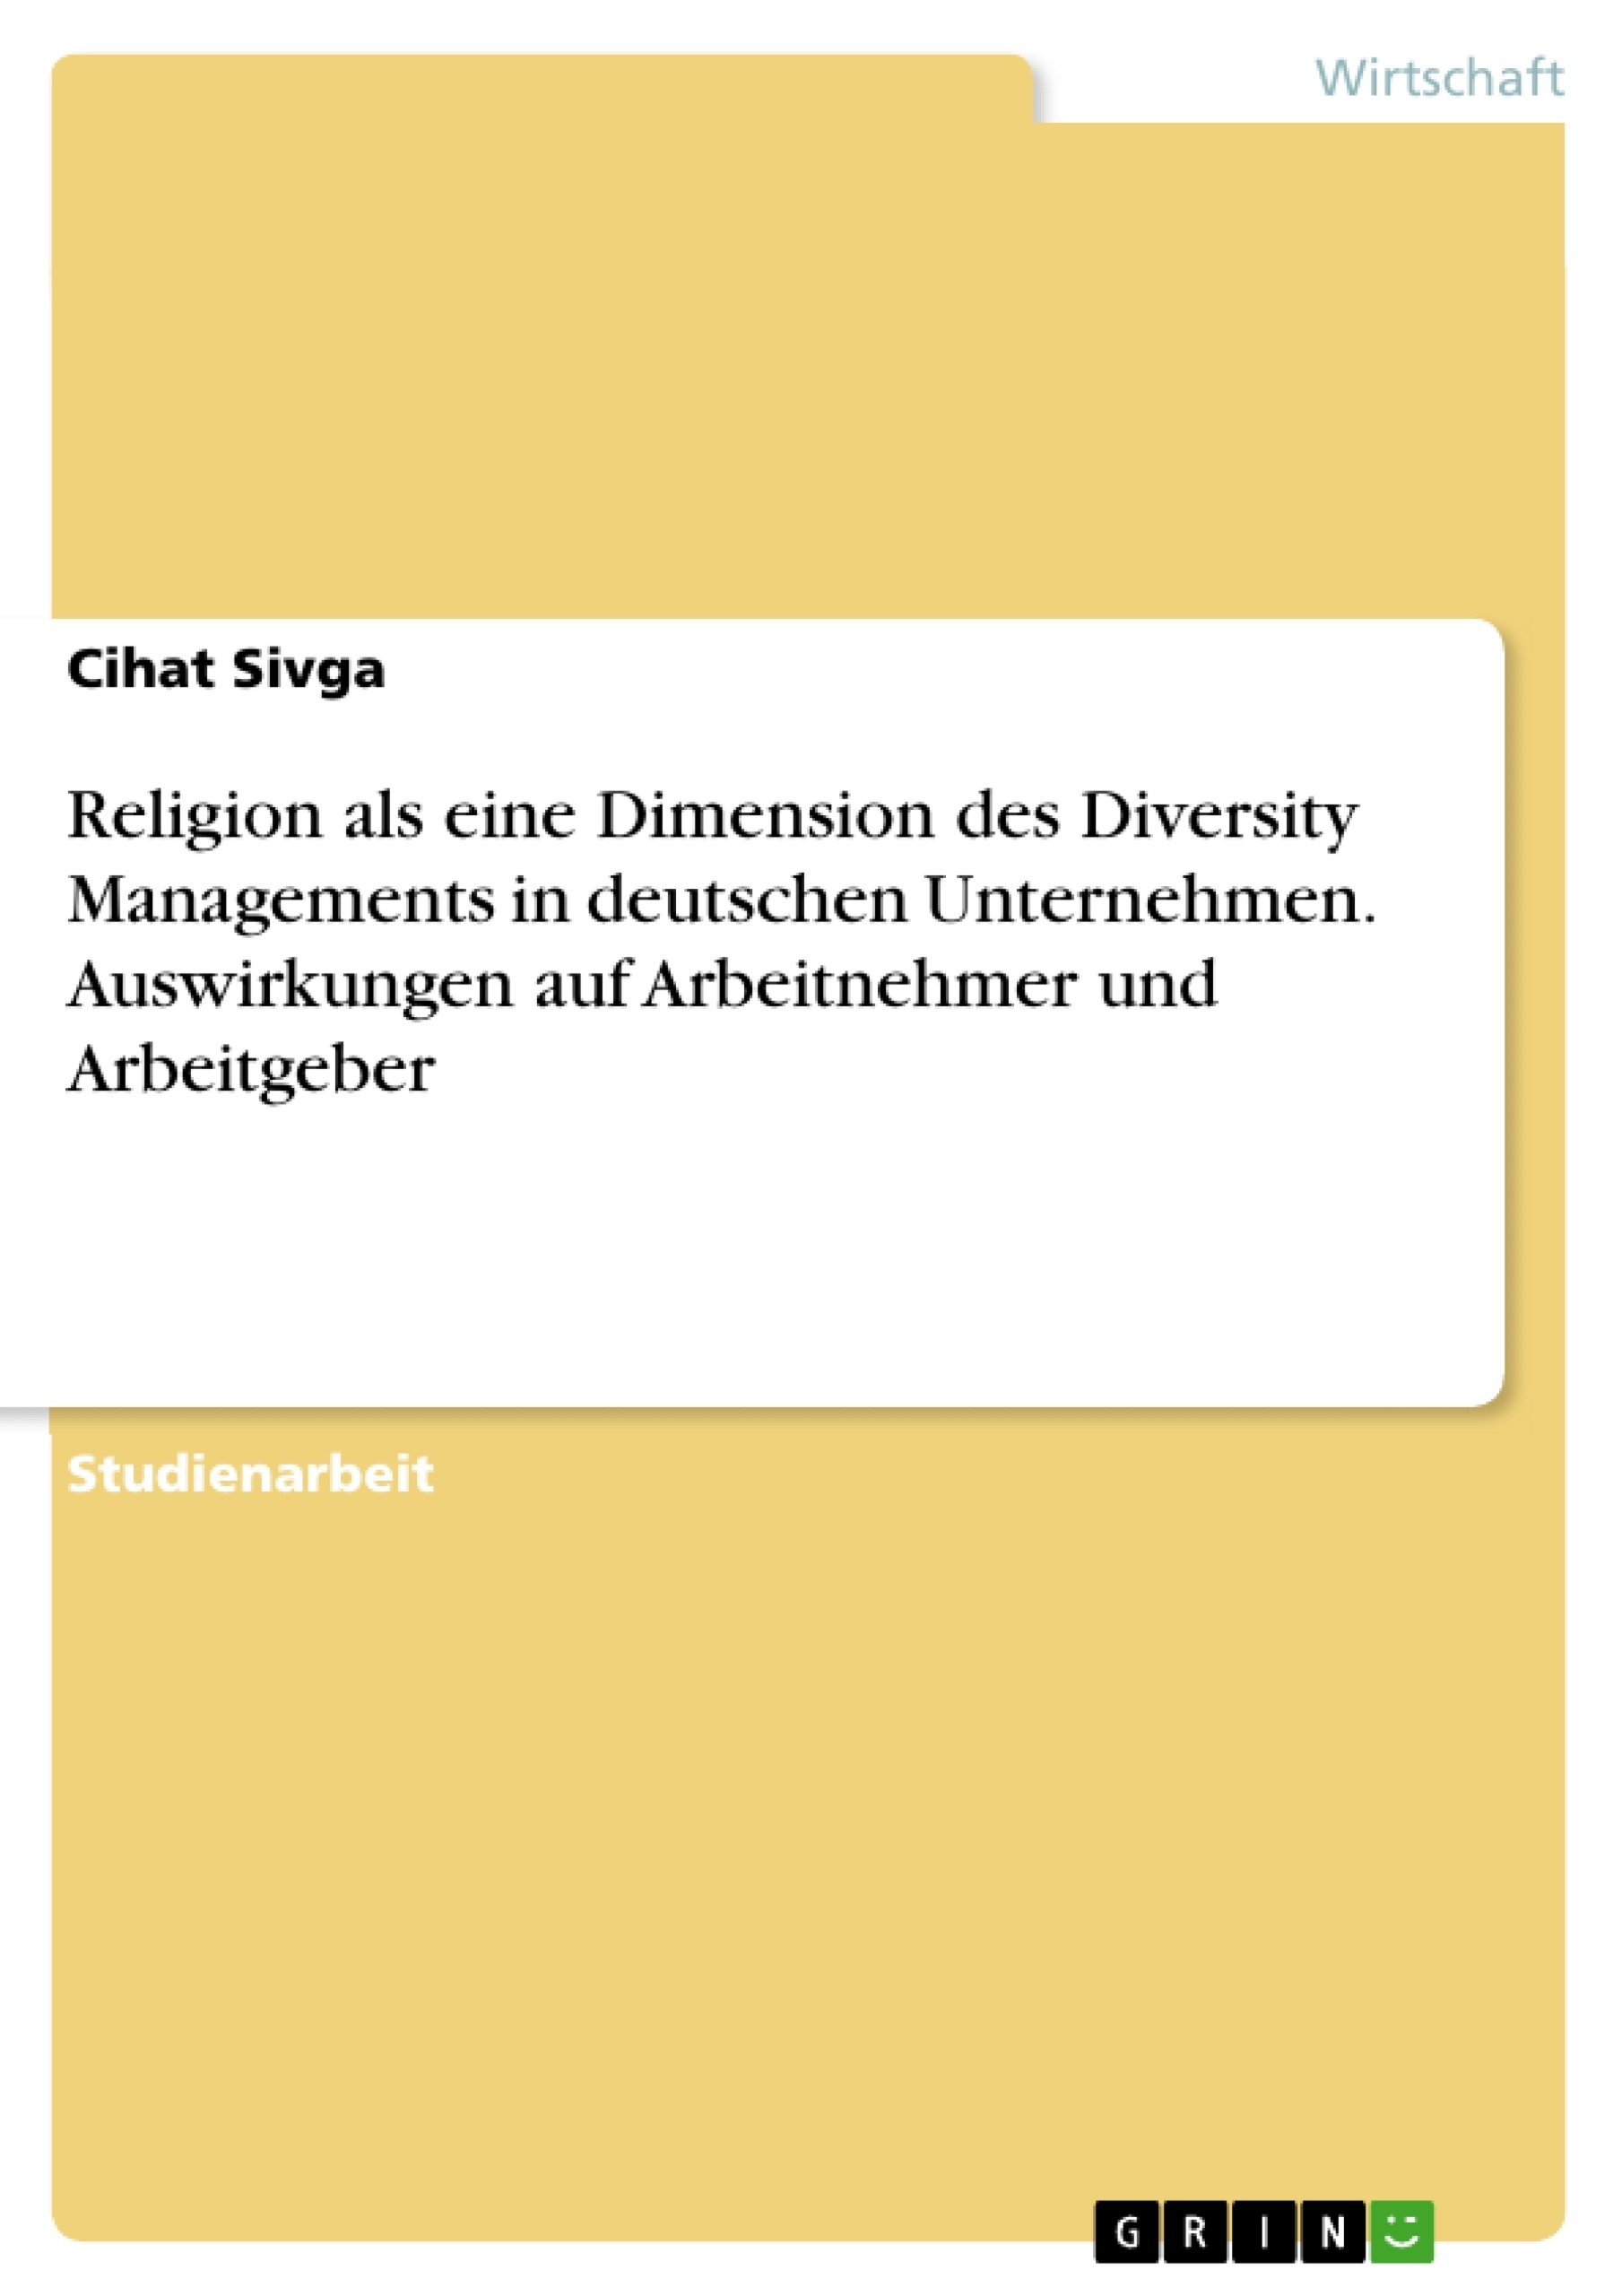 Titel: Religion als eine Dimension des Diversity Managements in deutschen Unternehmen. Auswirkungen auf Arbeitnehmer und Arbeitgeber